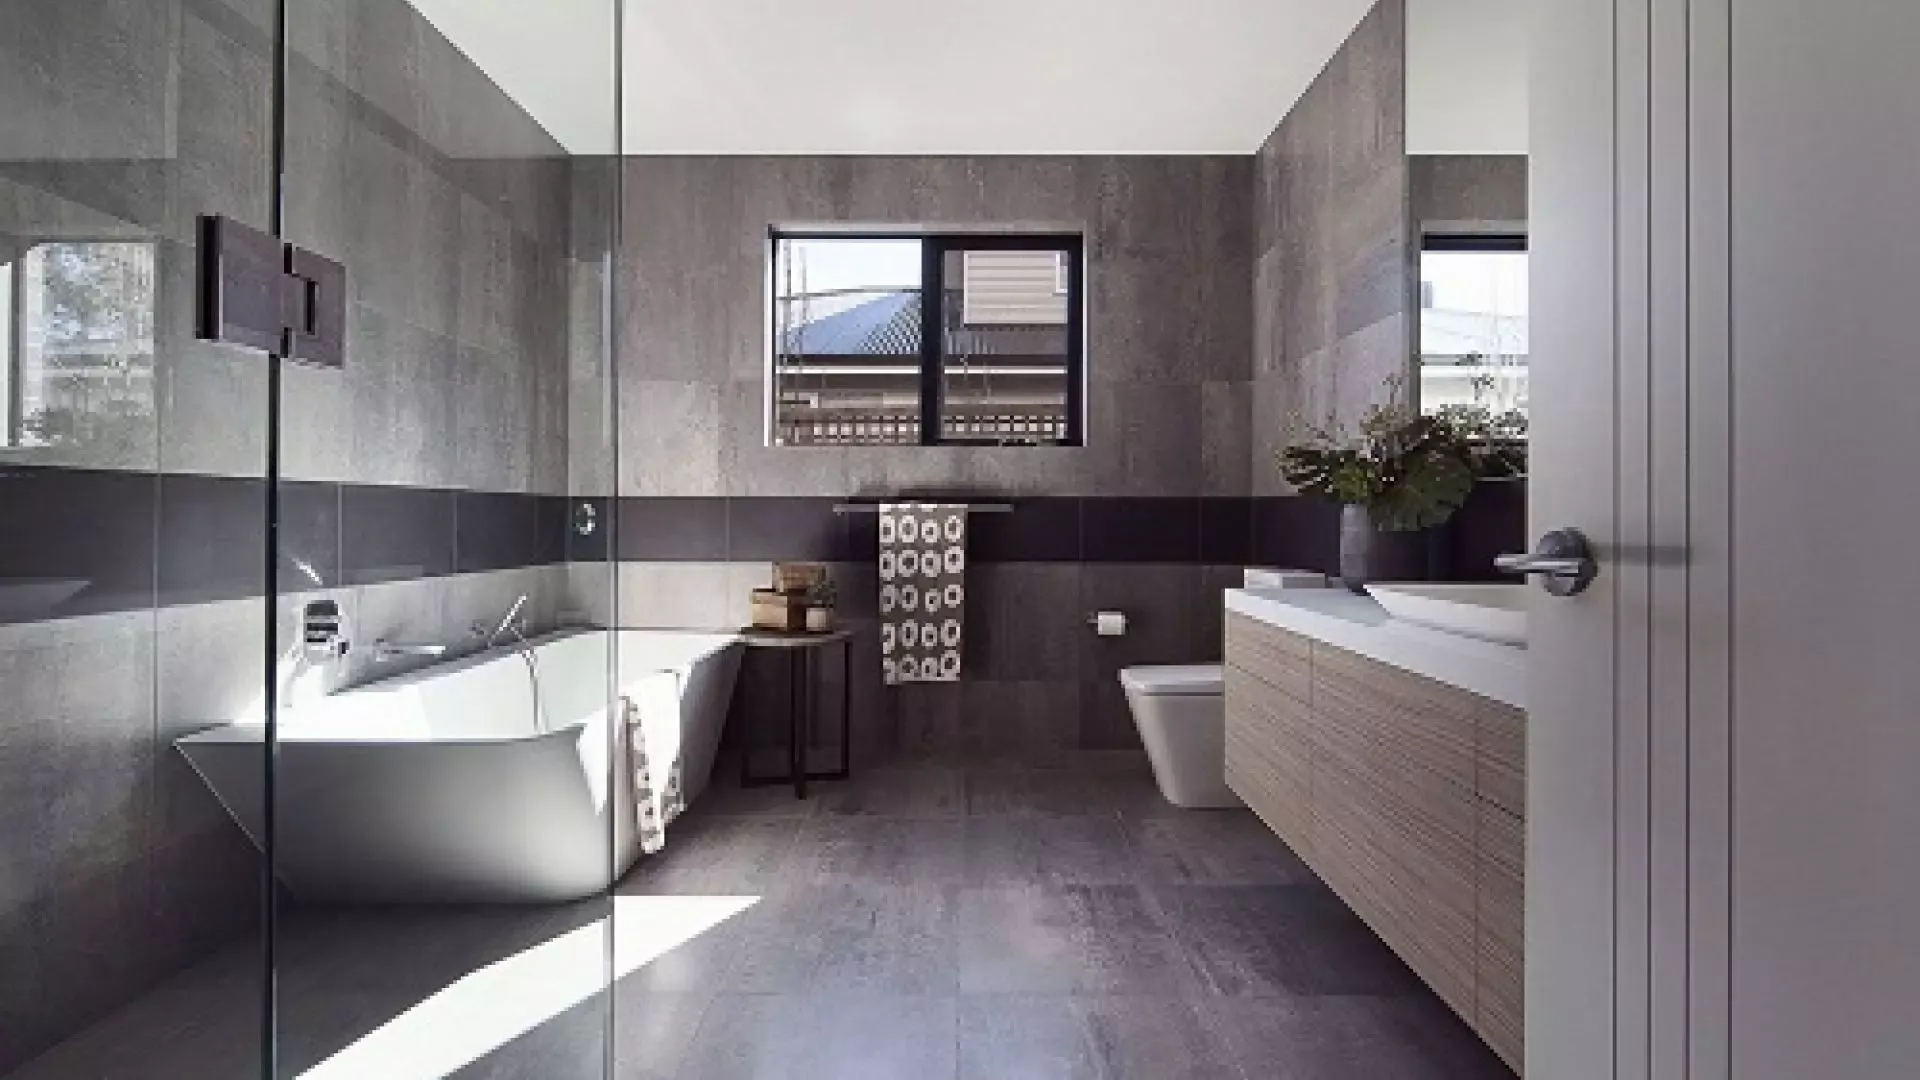 Gạch ốp nhà tắm nhỏ đơn sắc màu xám đen nổi bật